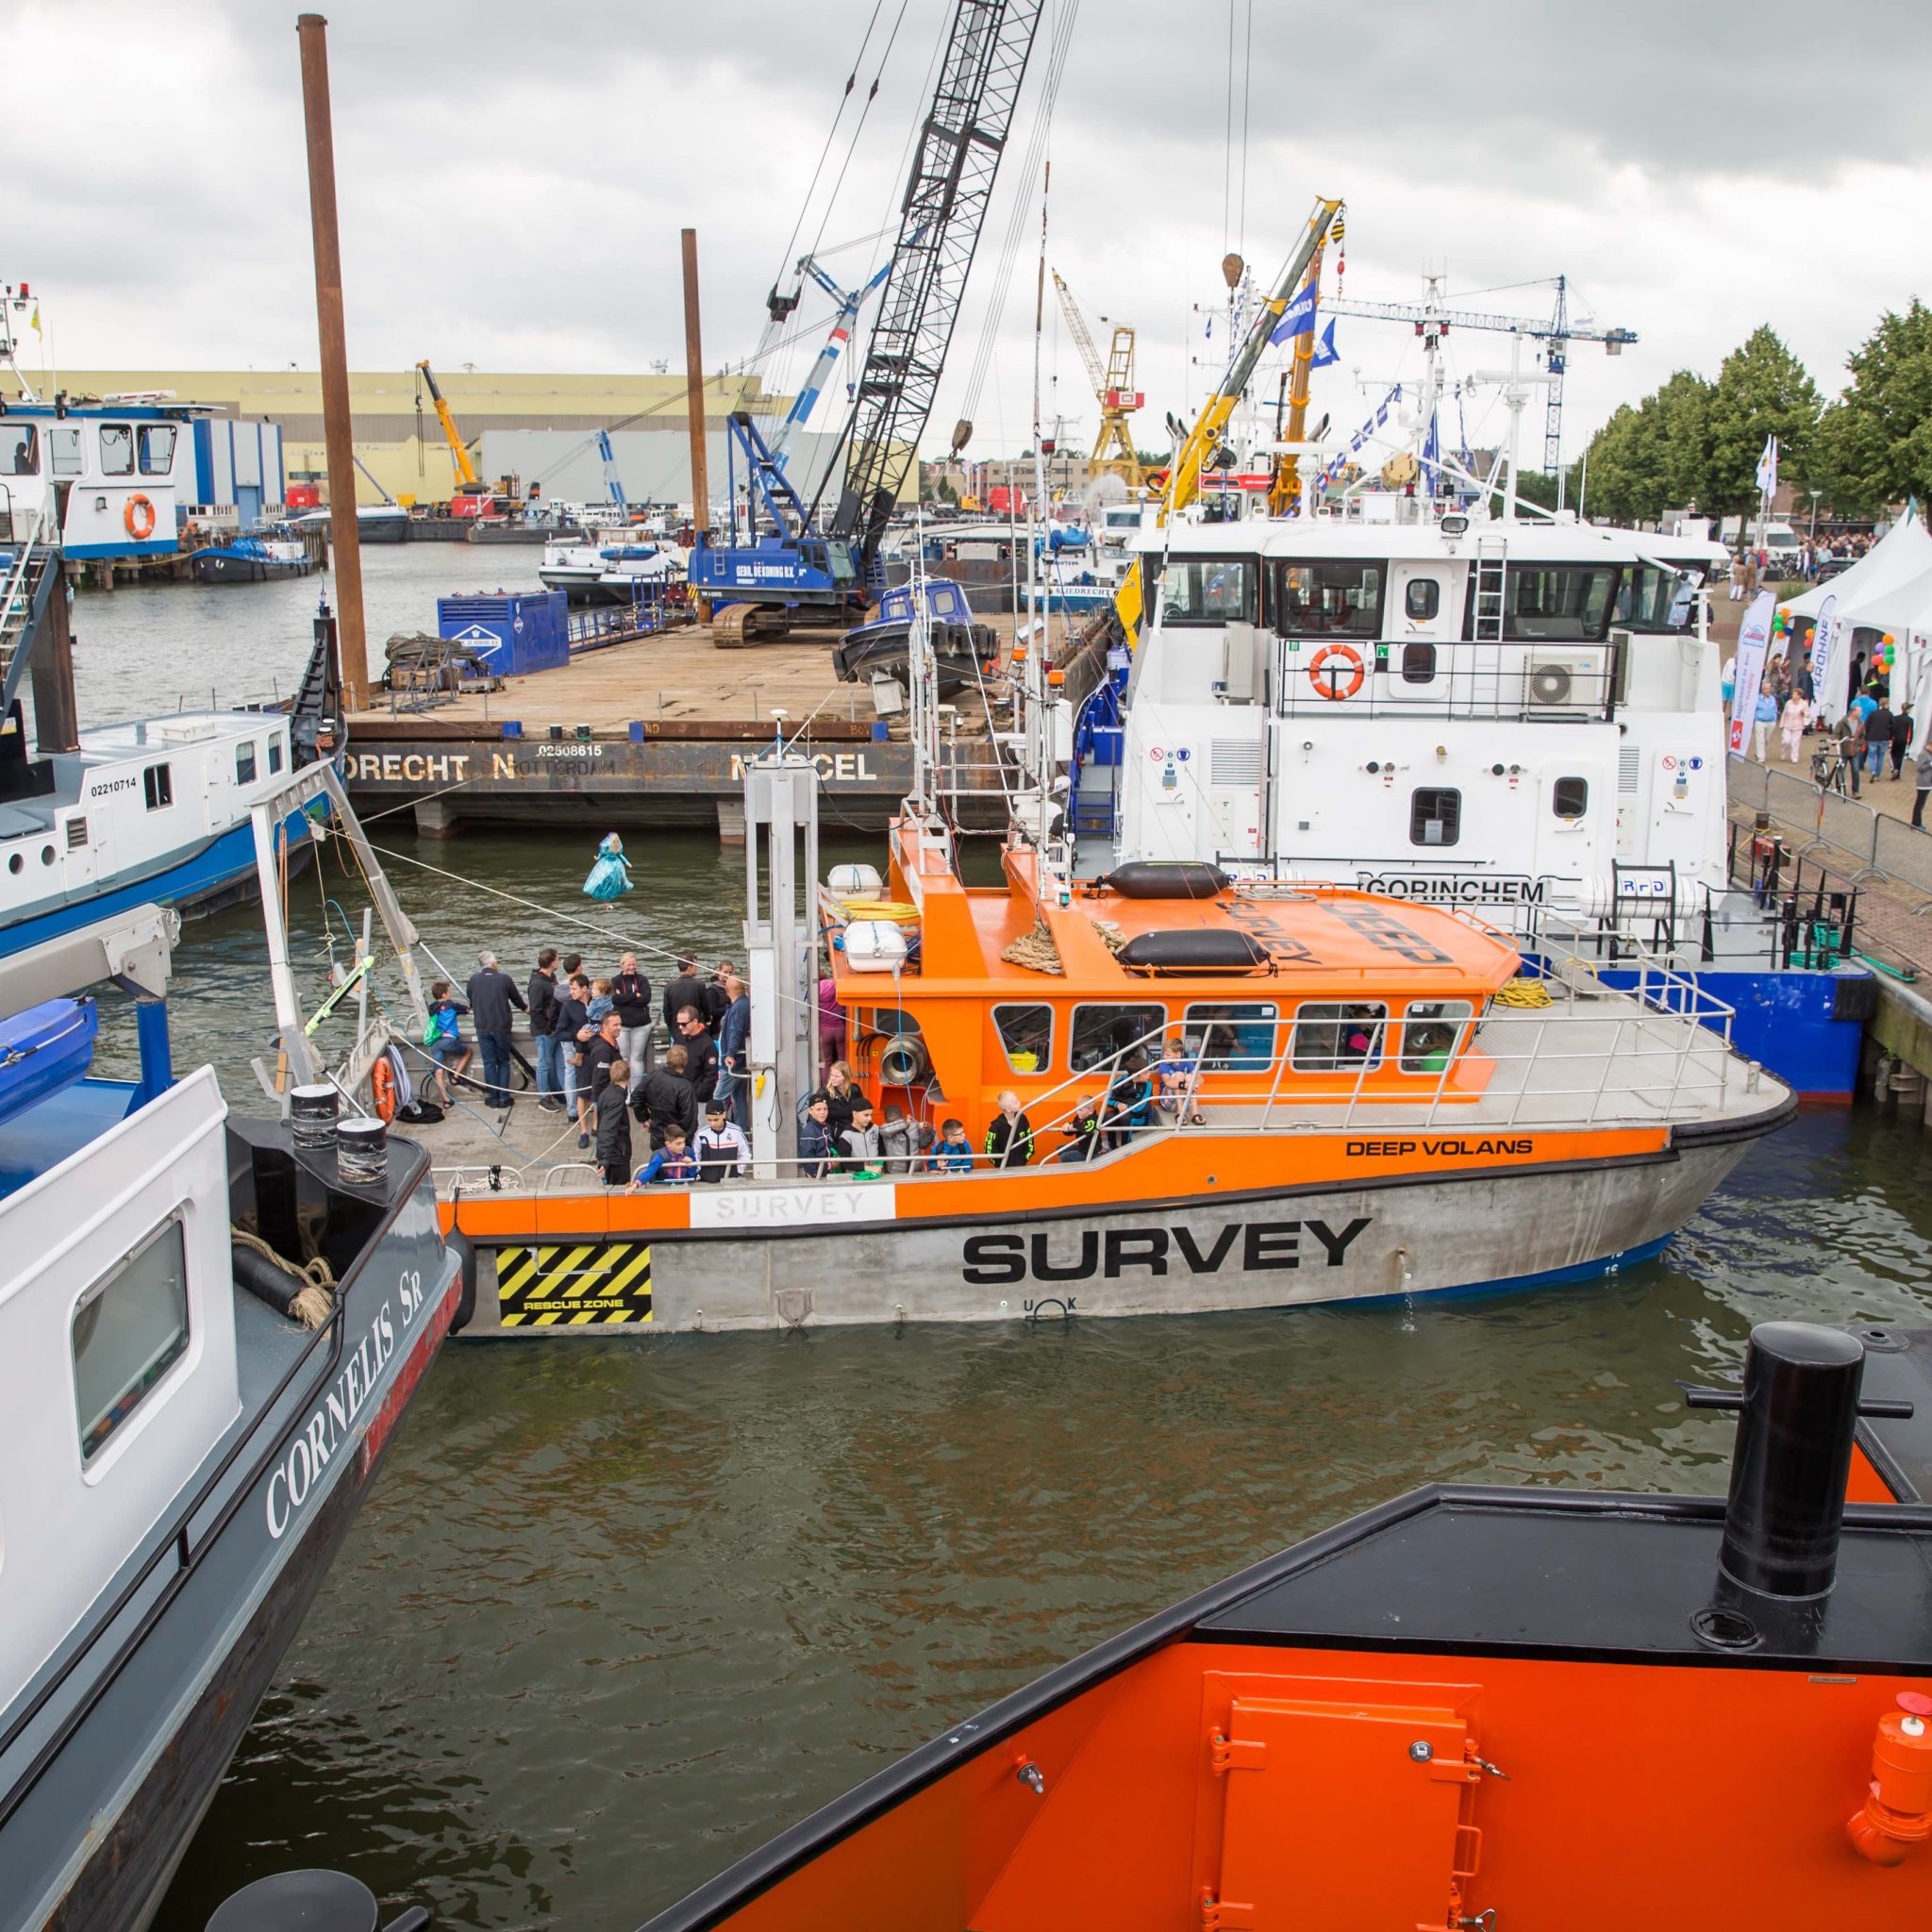 Net als in 2017 ligt de Sliedrechtse haven weer vol met te bezichtigen schepen tijdens het Baggerfestival. Op zondag is er een afsluitende openlucht kerkdienst. (Foto Peter Verheijen).